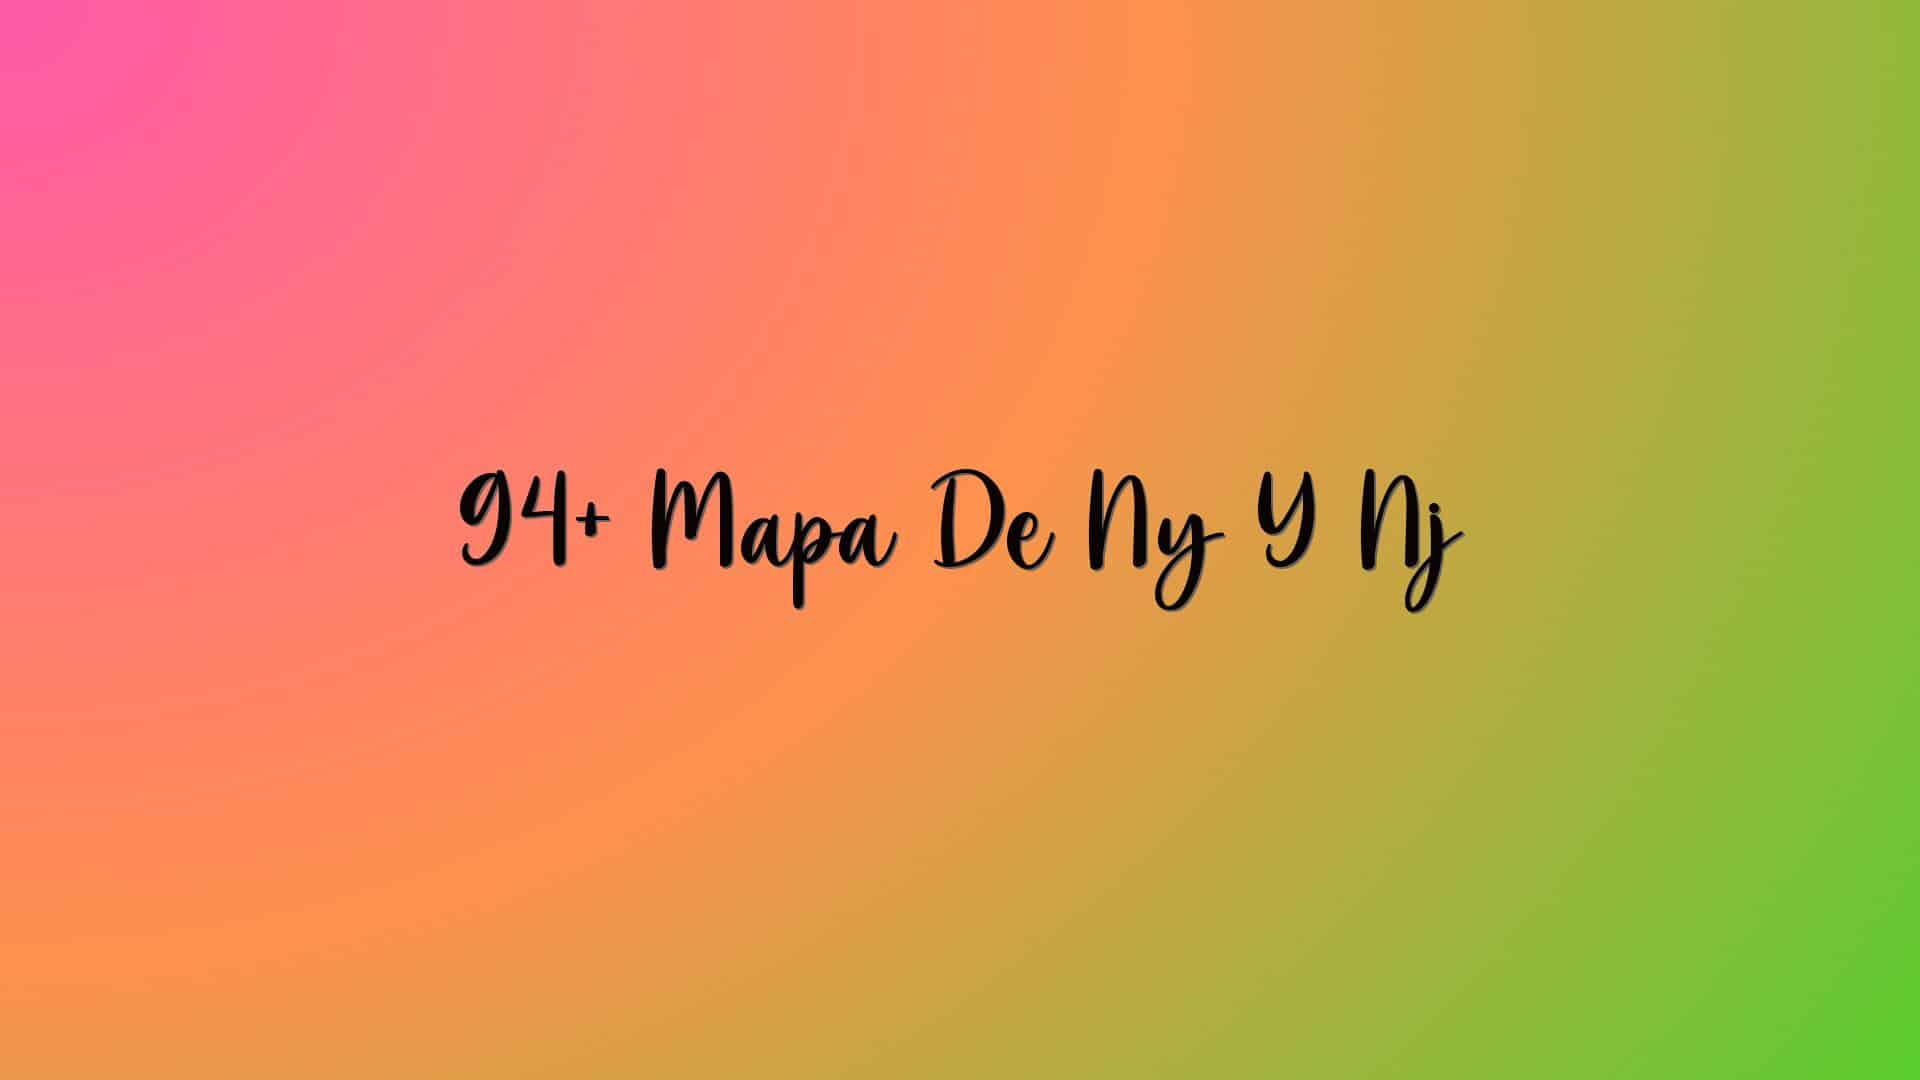 94+ Mapa De Ny Y Nj